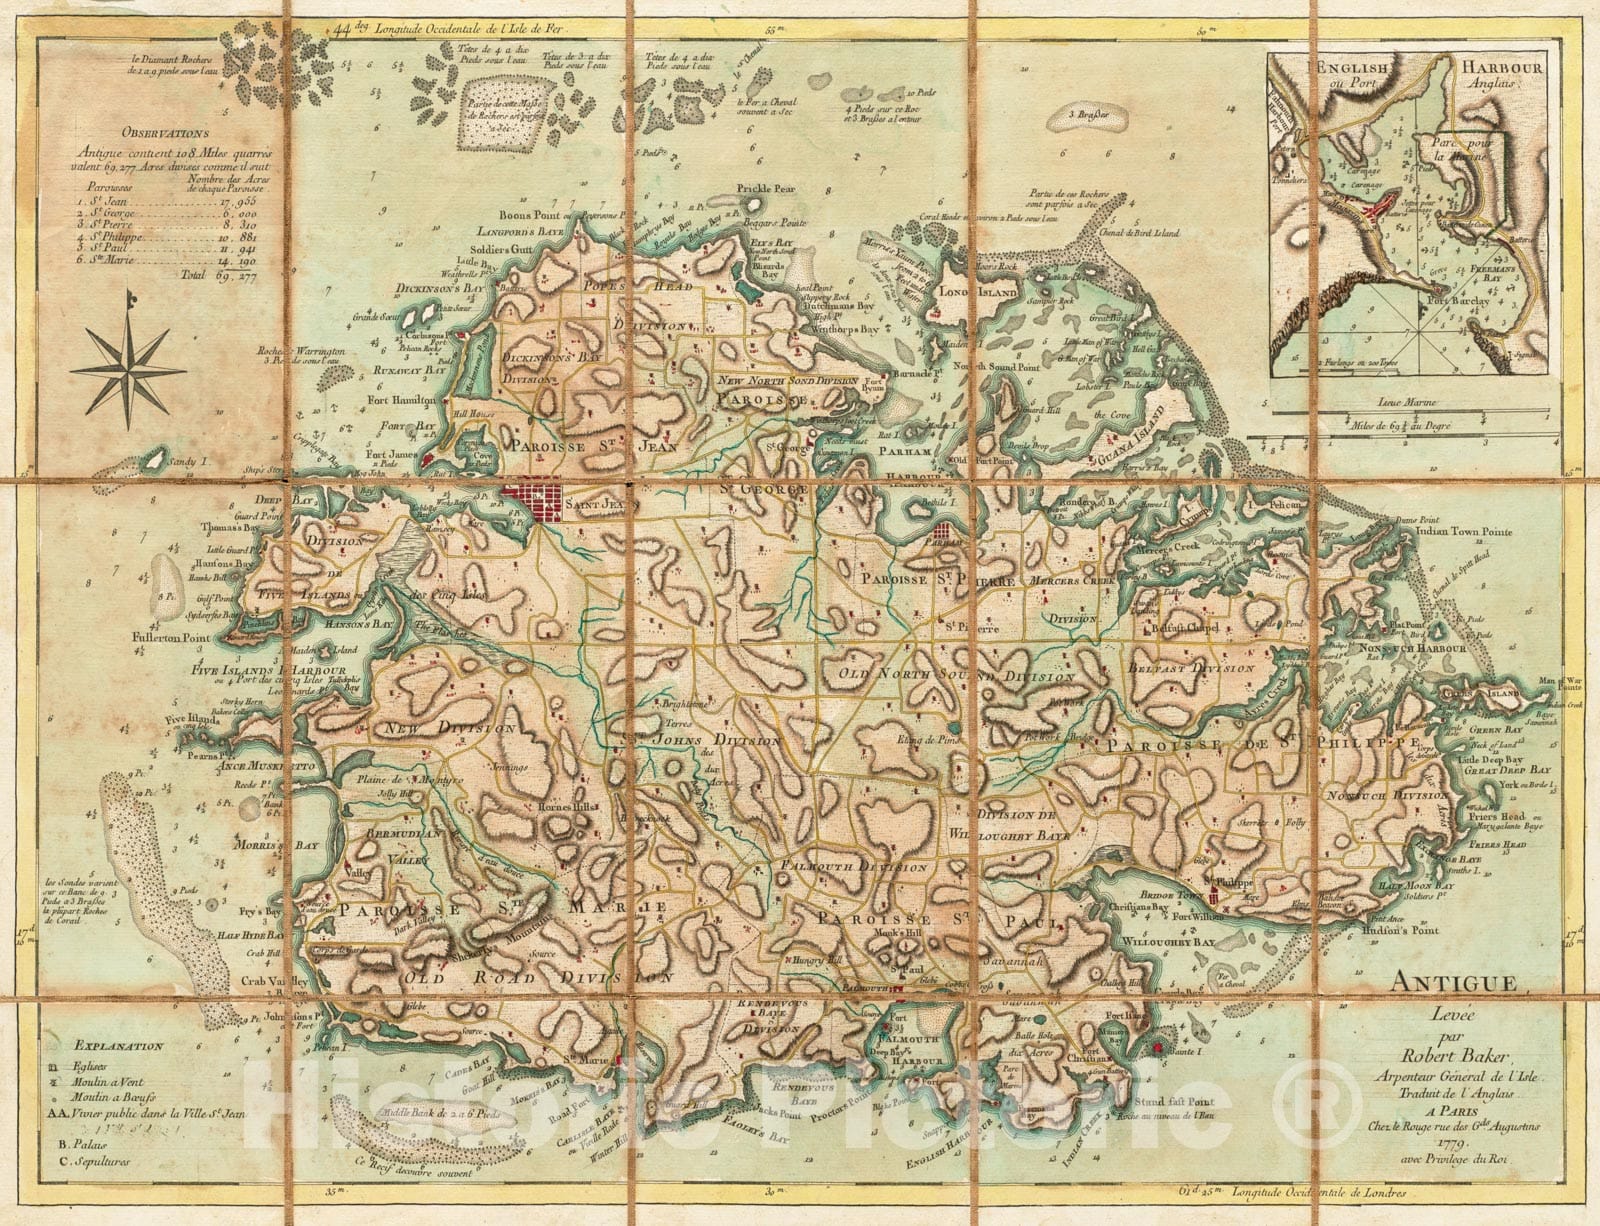 Historical Map, 1779 Antigue : levee par Robert Baker, Arpenteur General de l'Isle ; traduit de l'Anglais, Vintage Wall Art